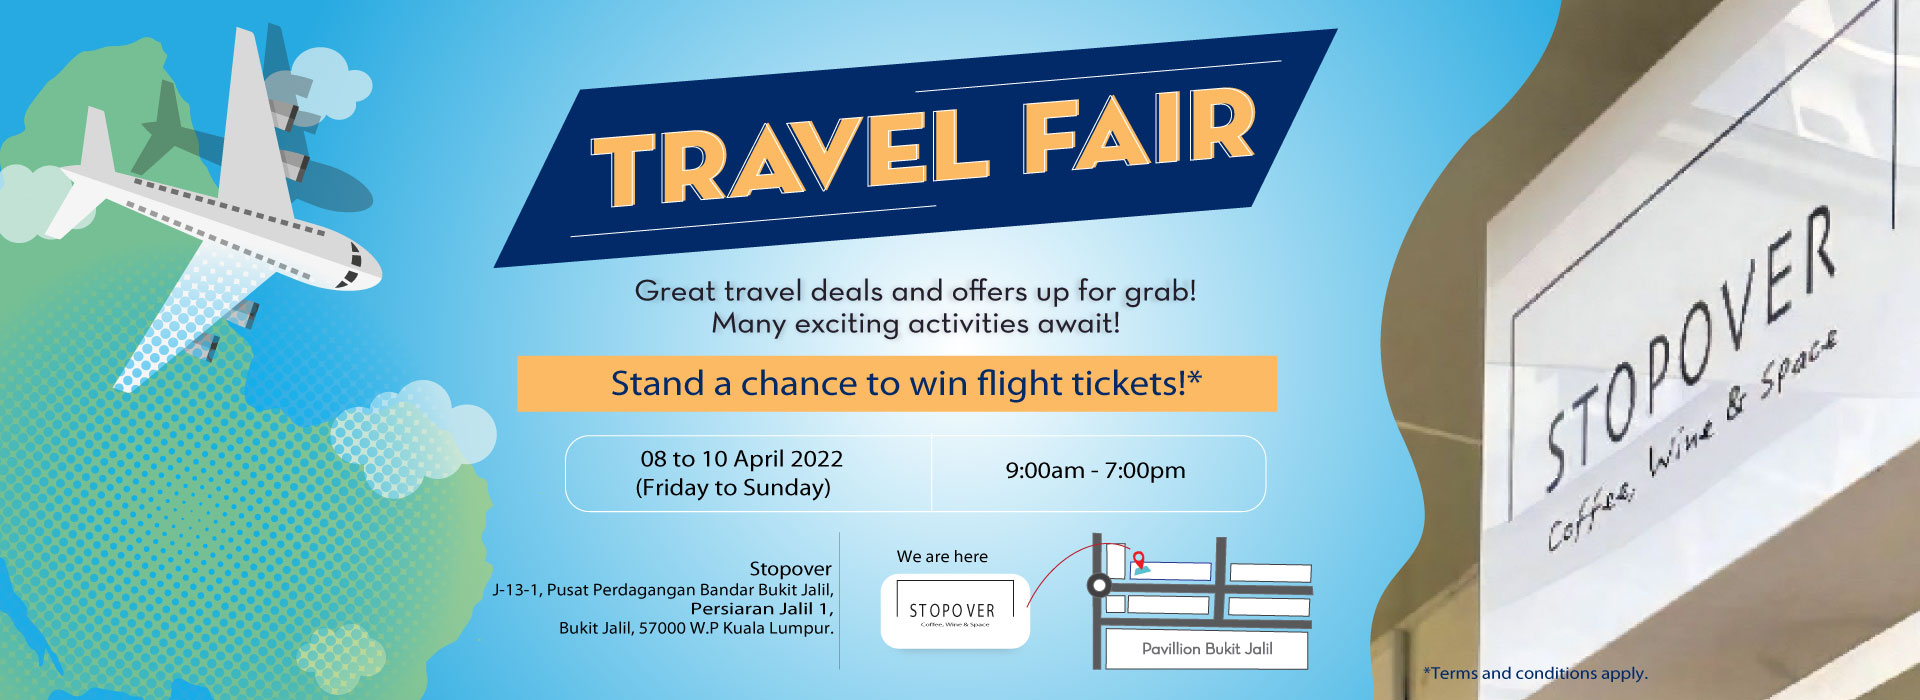 Travel Fair @ Stopover travel fair 2022 WB